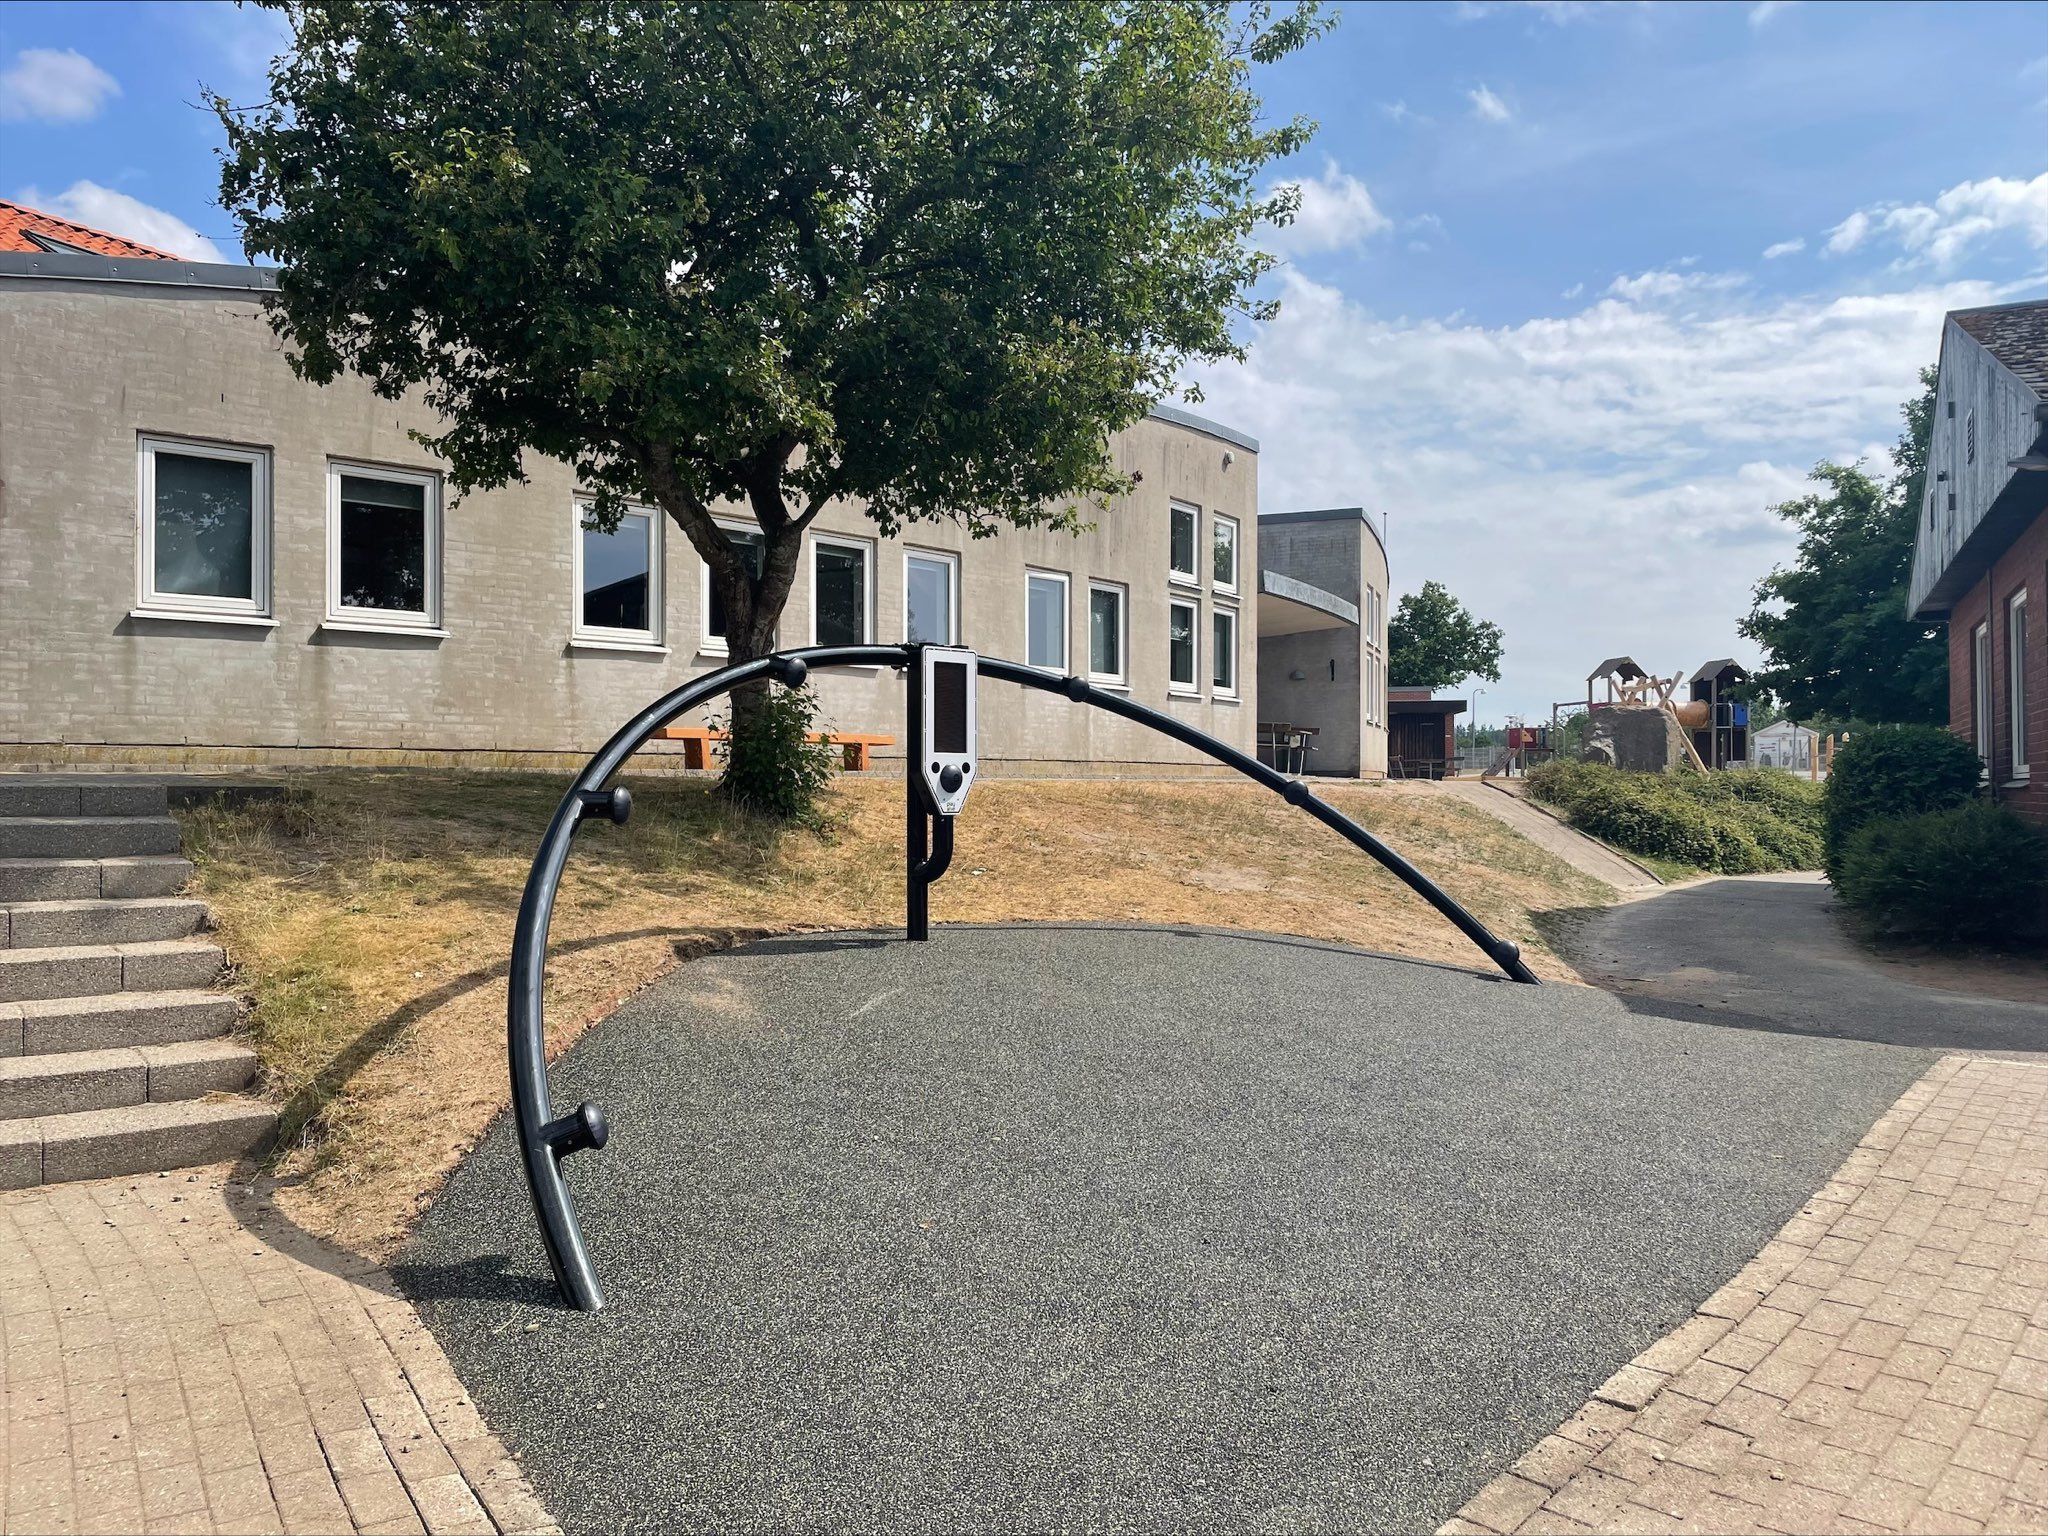 Wave installed at Skibet School in Vejle